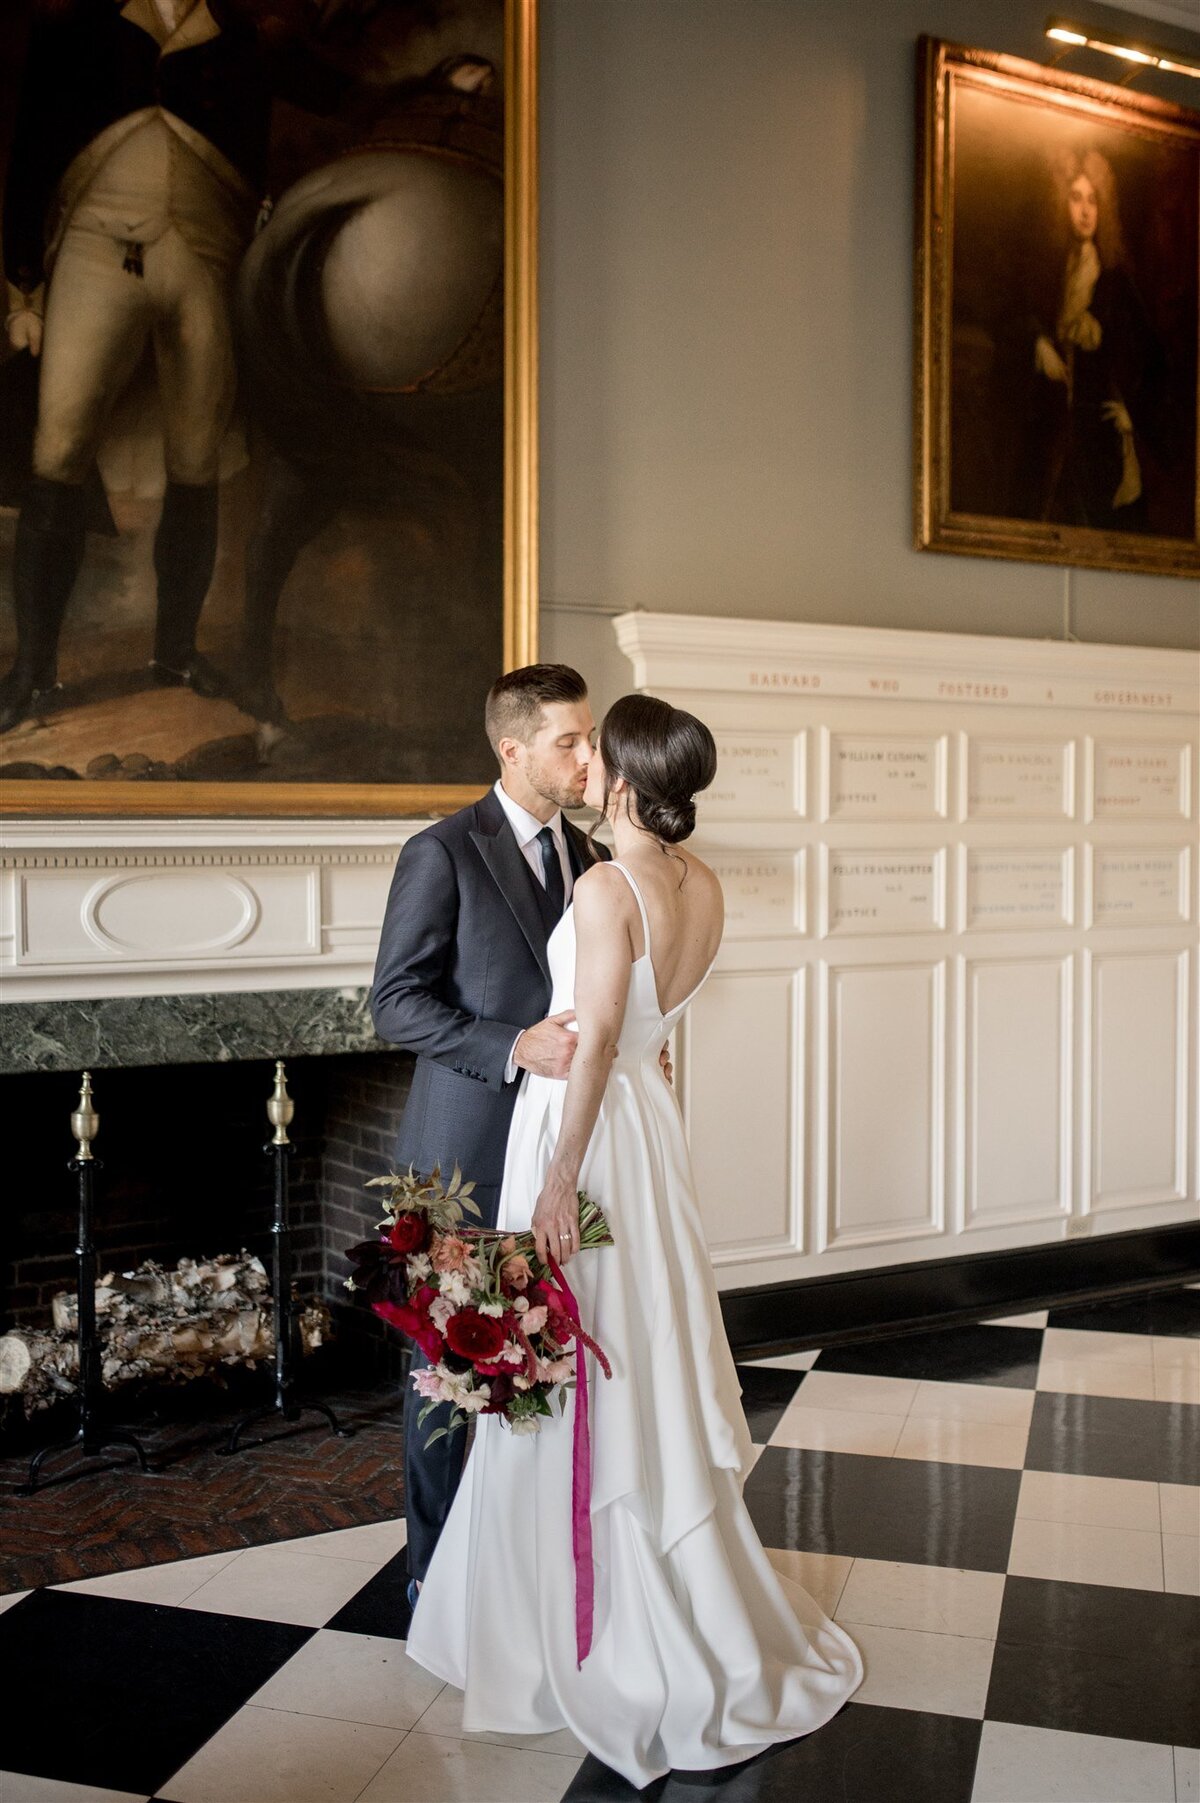 Kate-Murtaugh-Events-Boston-wedding-planner-bride-groom-Harvard-Club